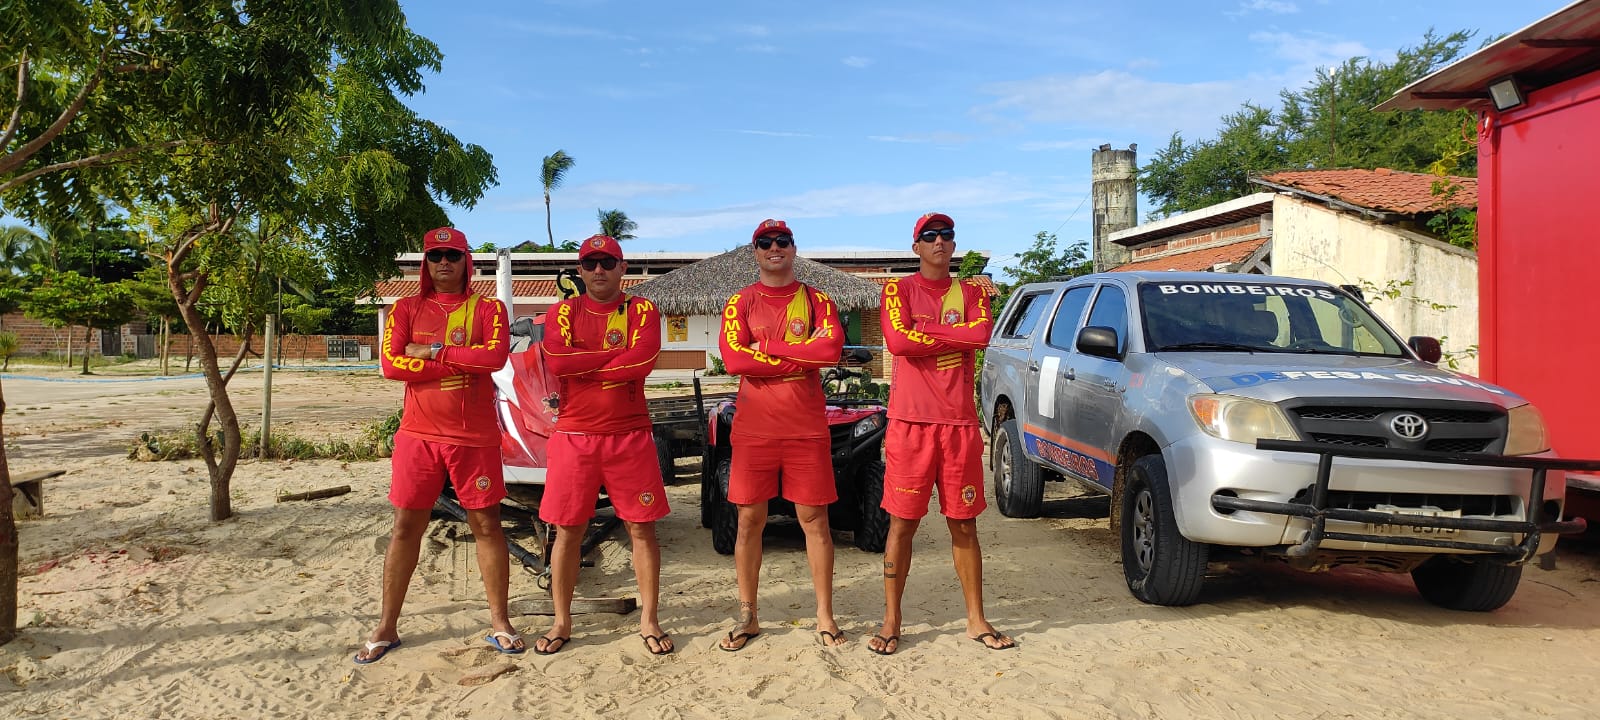 Guarda-vidas do Corpo de Bombeiros do Ceará resgatam pescador e caiaque em Jericoacoara